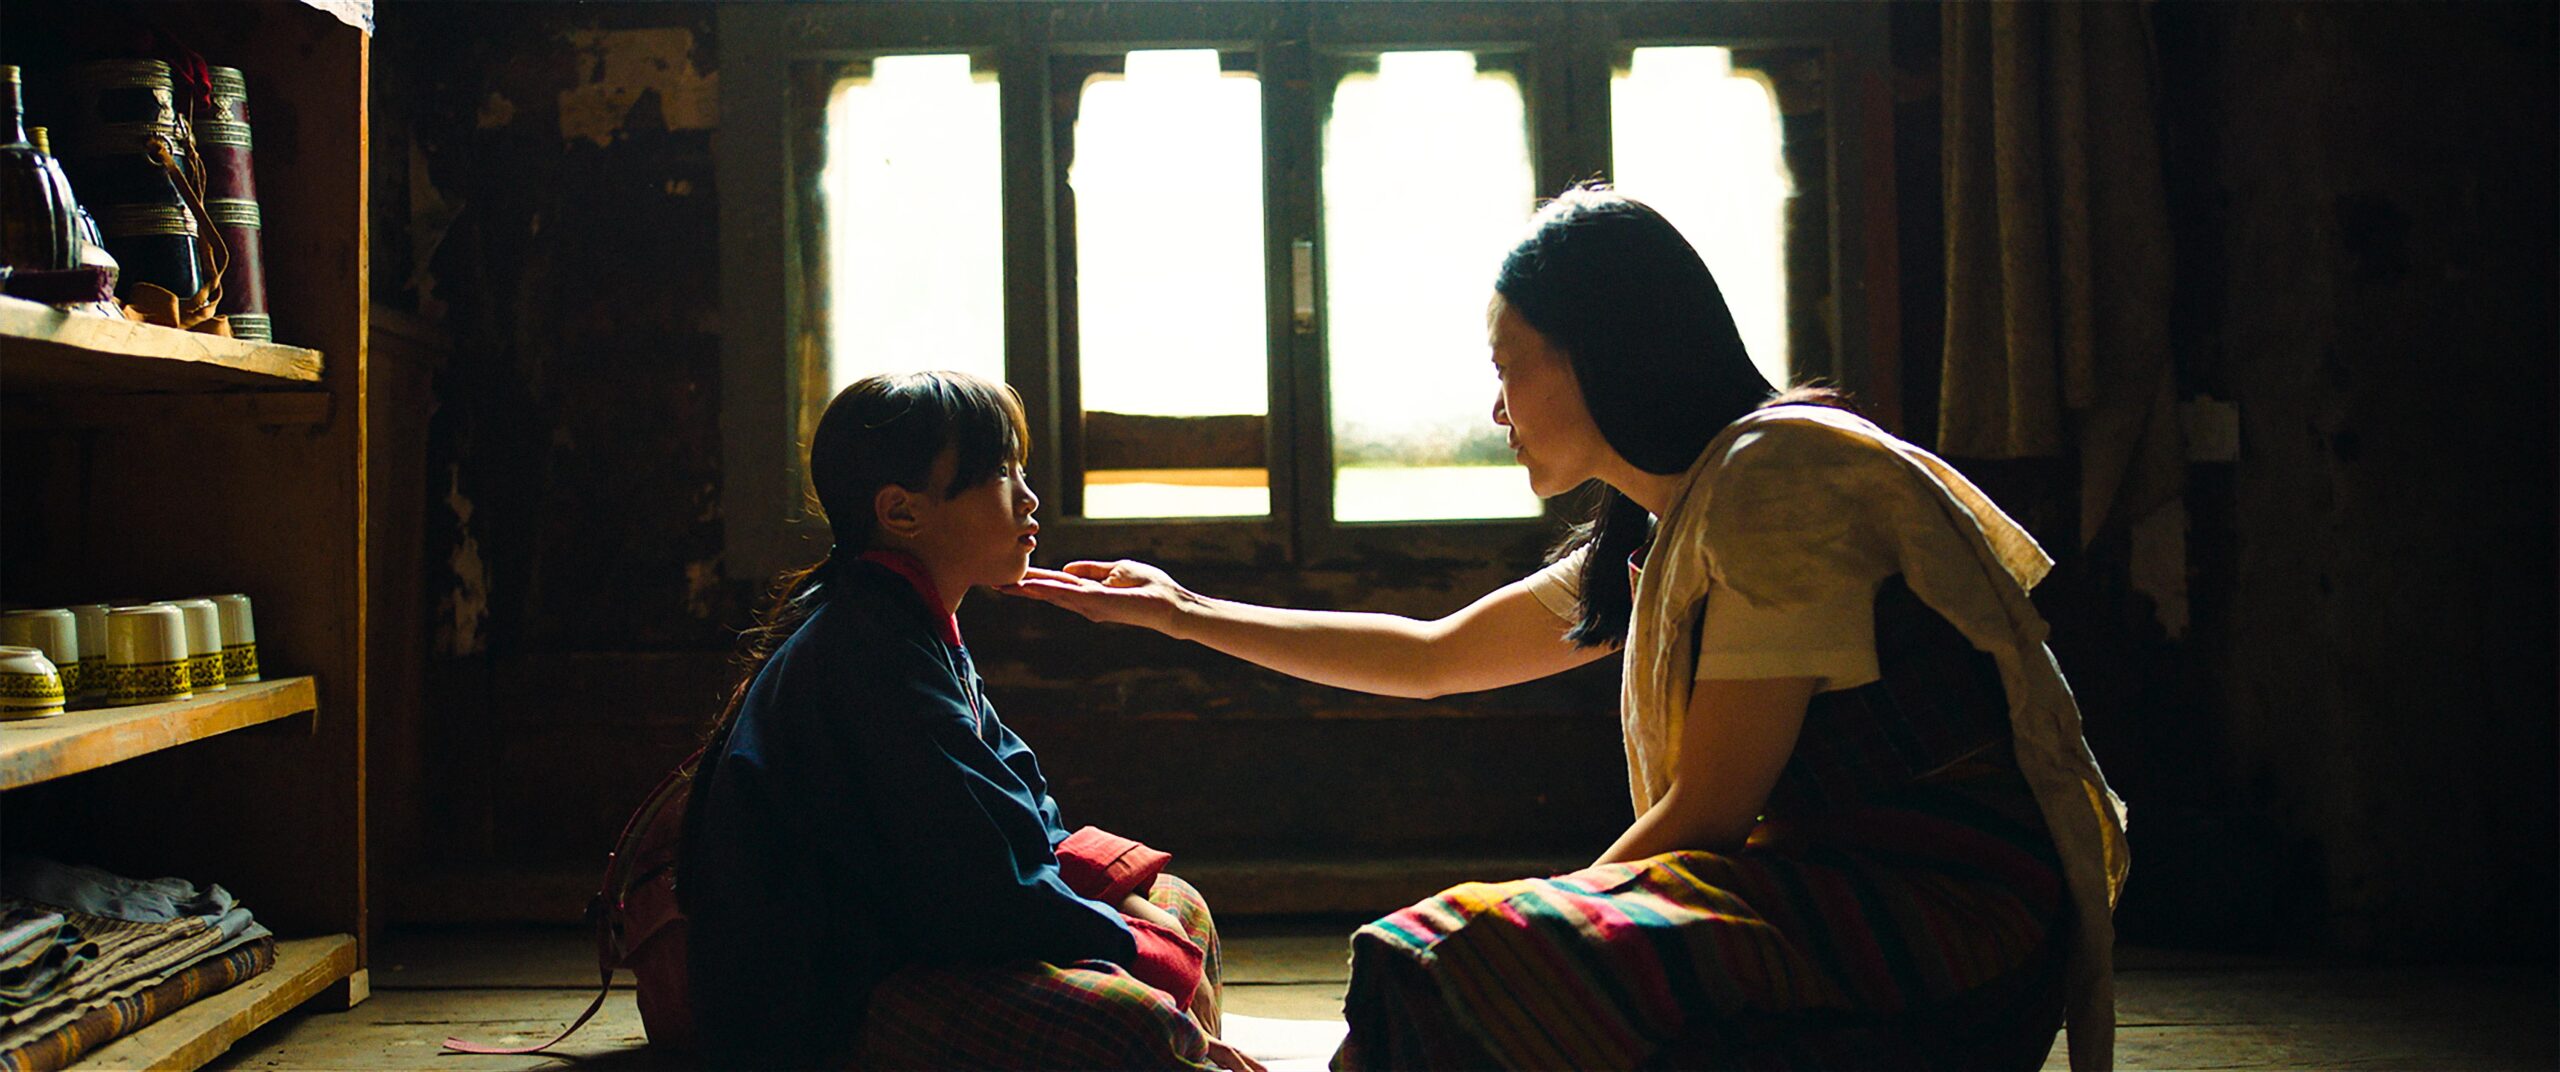 C’era una volta in Bhutan: nuova data e il trailer italiano